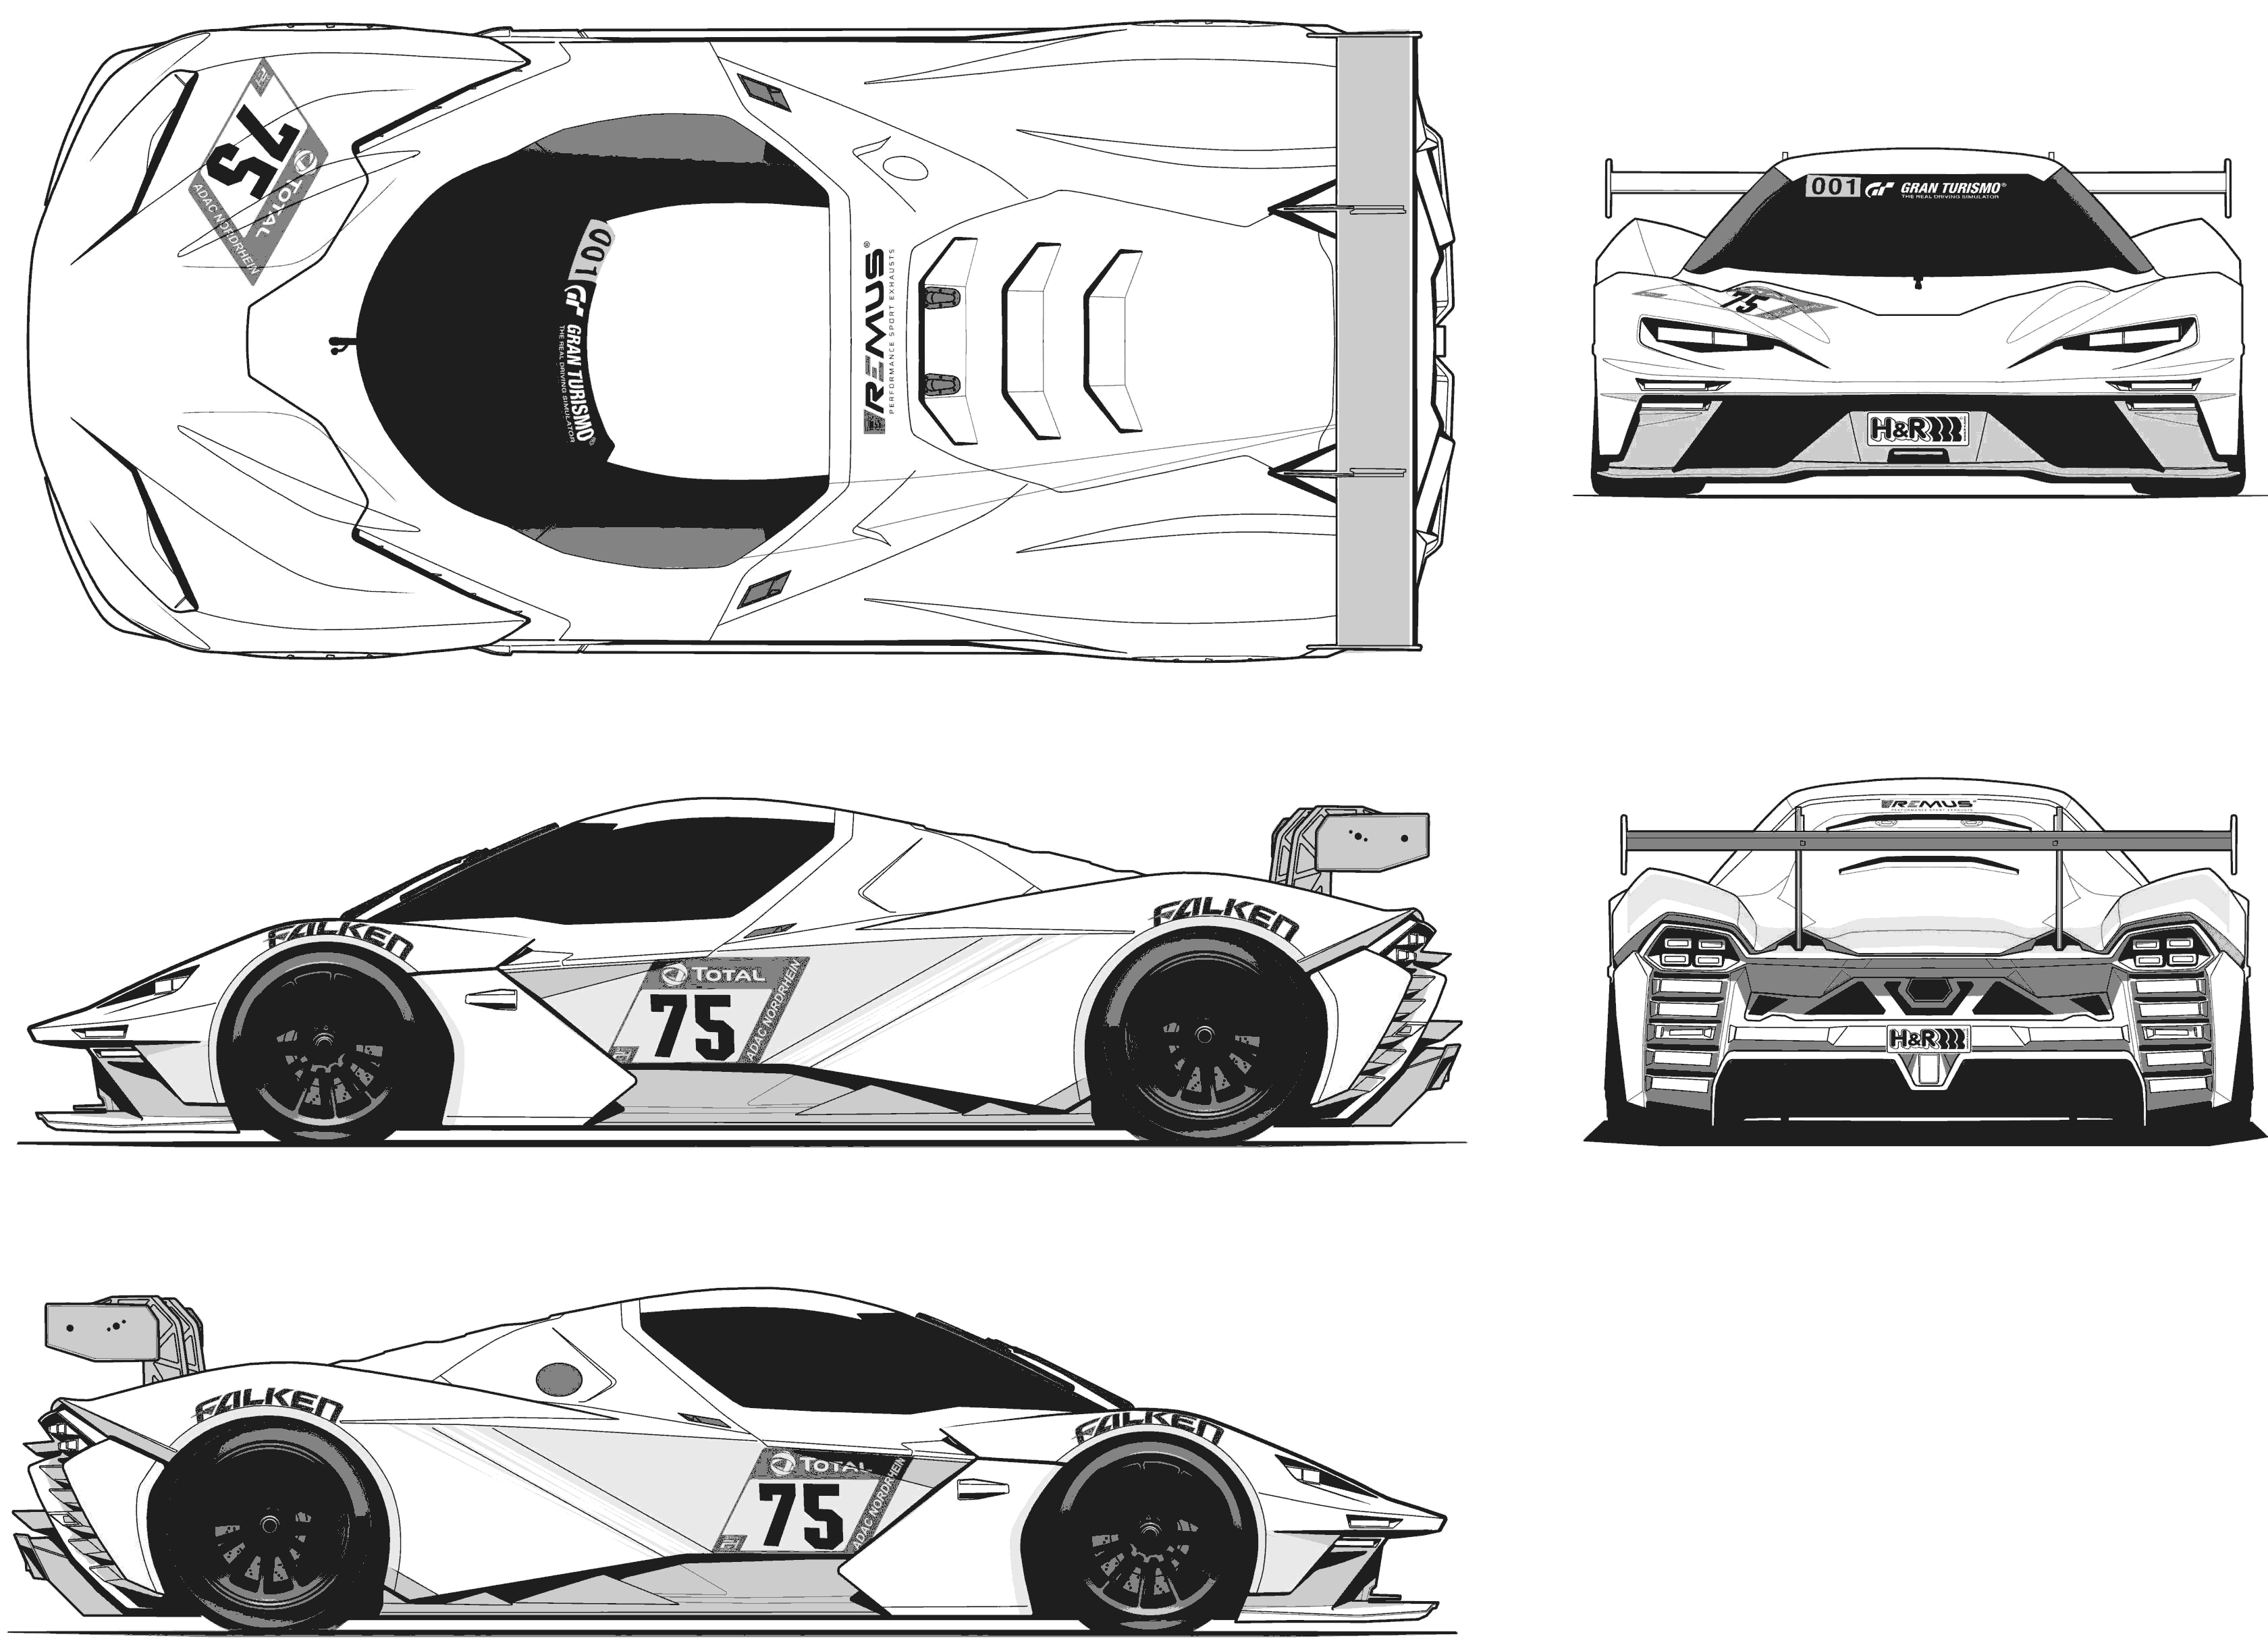 KTM X-Bow GTX blueprint